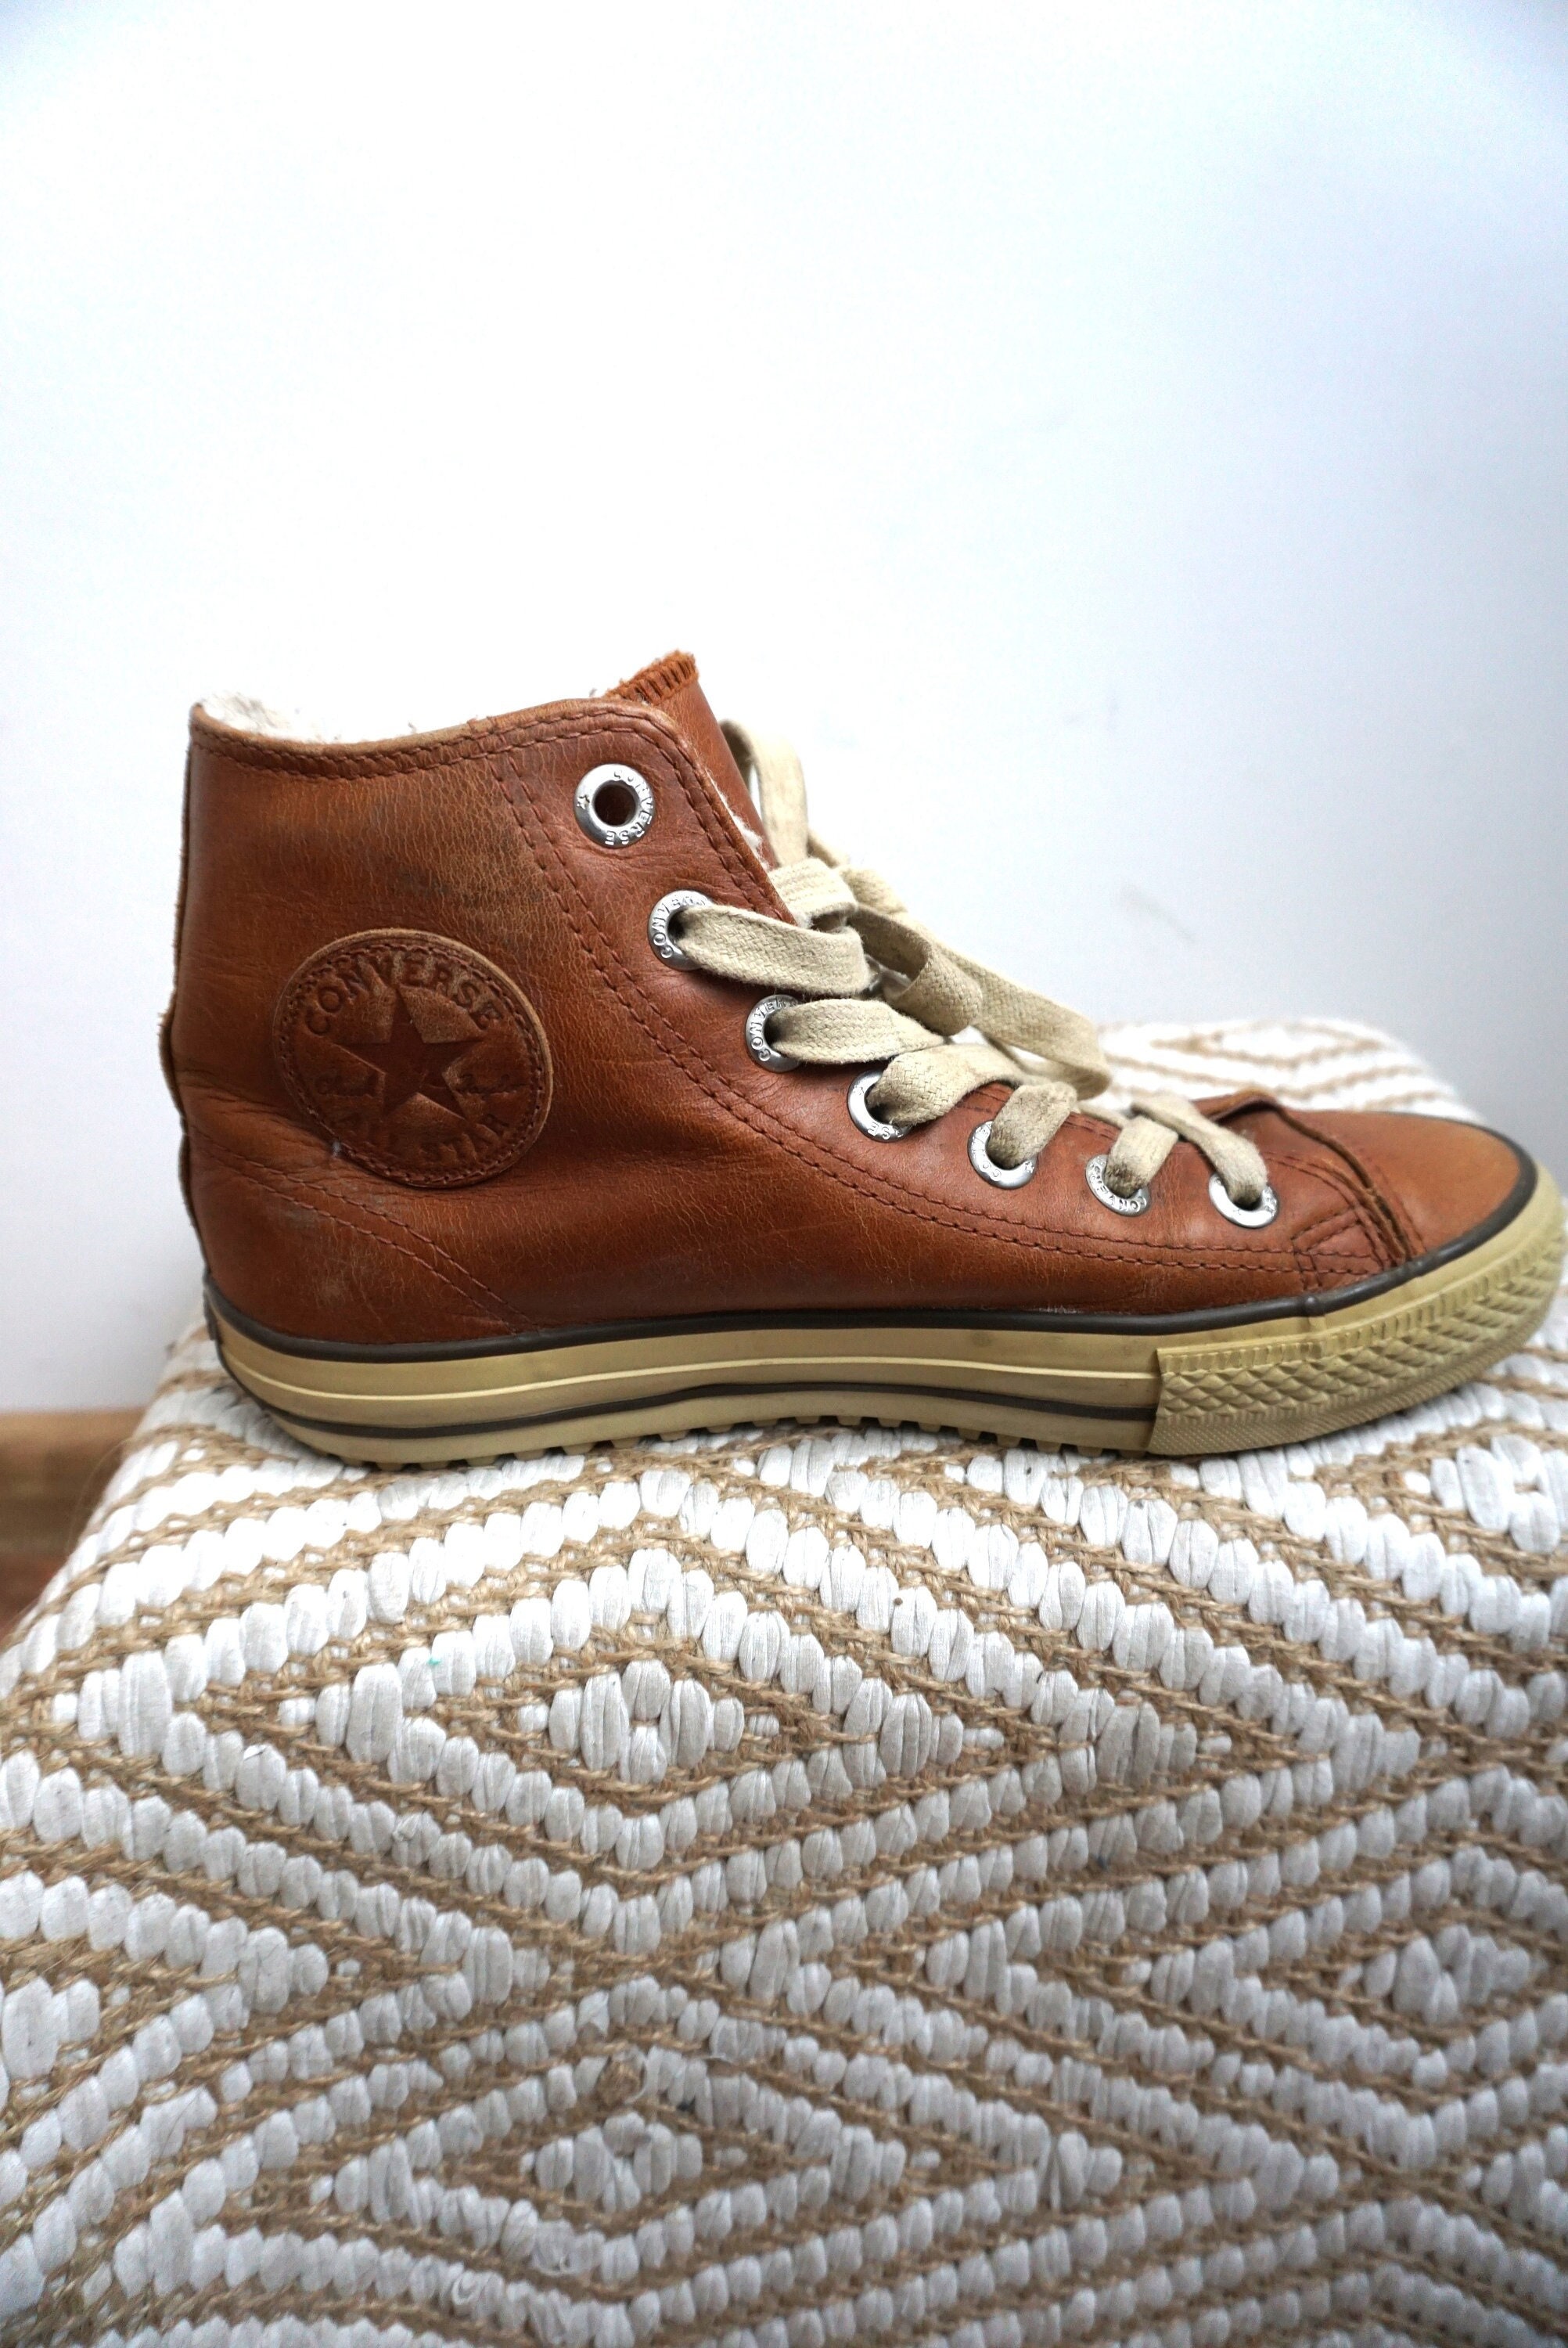 salón Doncella plan de estudios Vintage Brown Leather Converse Boots / Sneakers / Warm Inside/ - Etsy